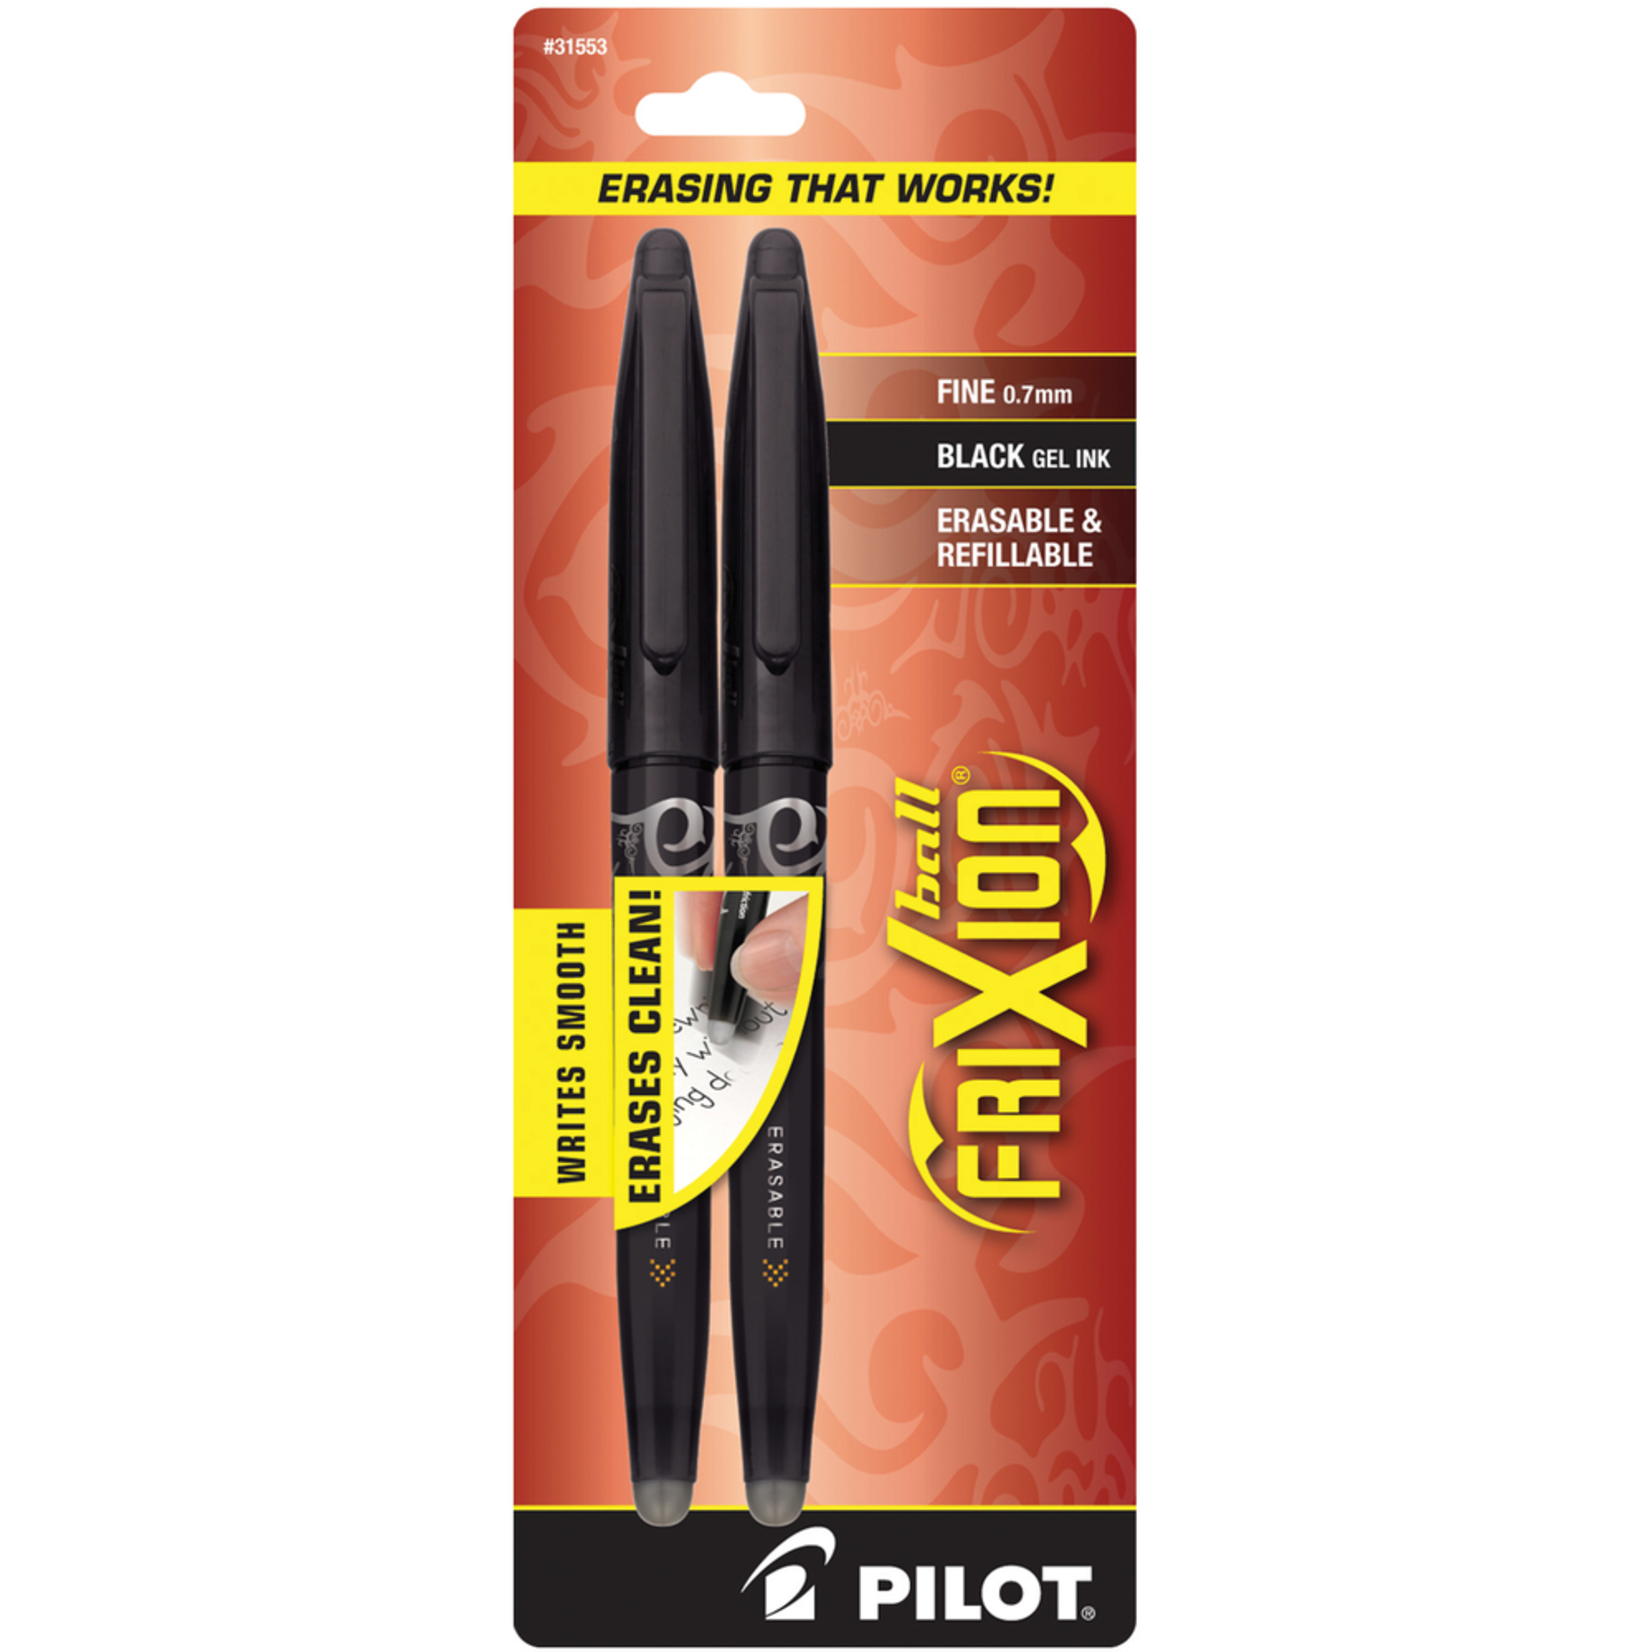 Pilot Pilot FriXion Erasable Gel Pen Black .7mm 2Pk